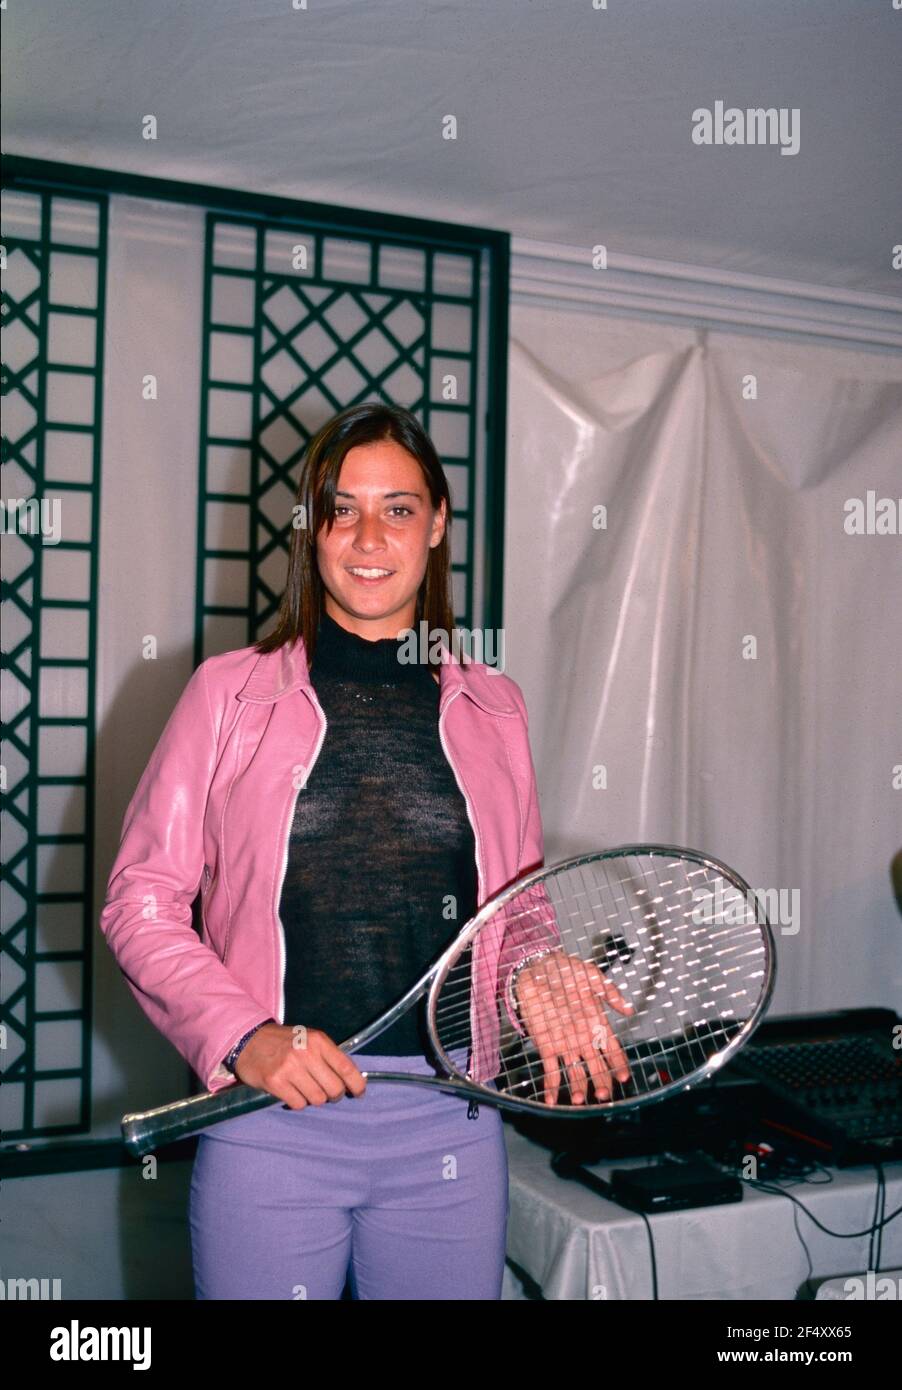 La tenista italiana Flavia Pennetta, Open Italiano 2000 Foto de stock